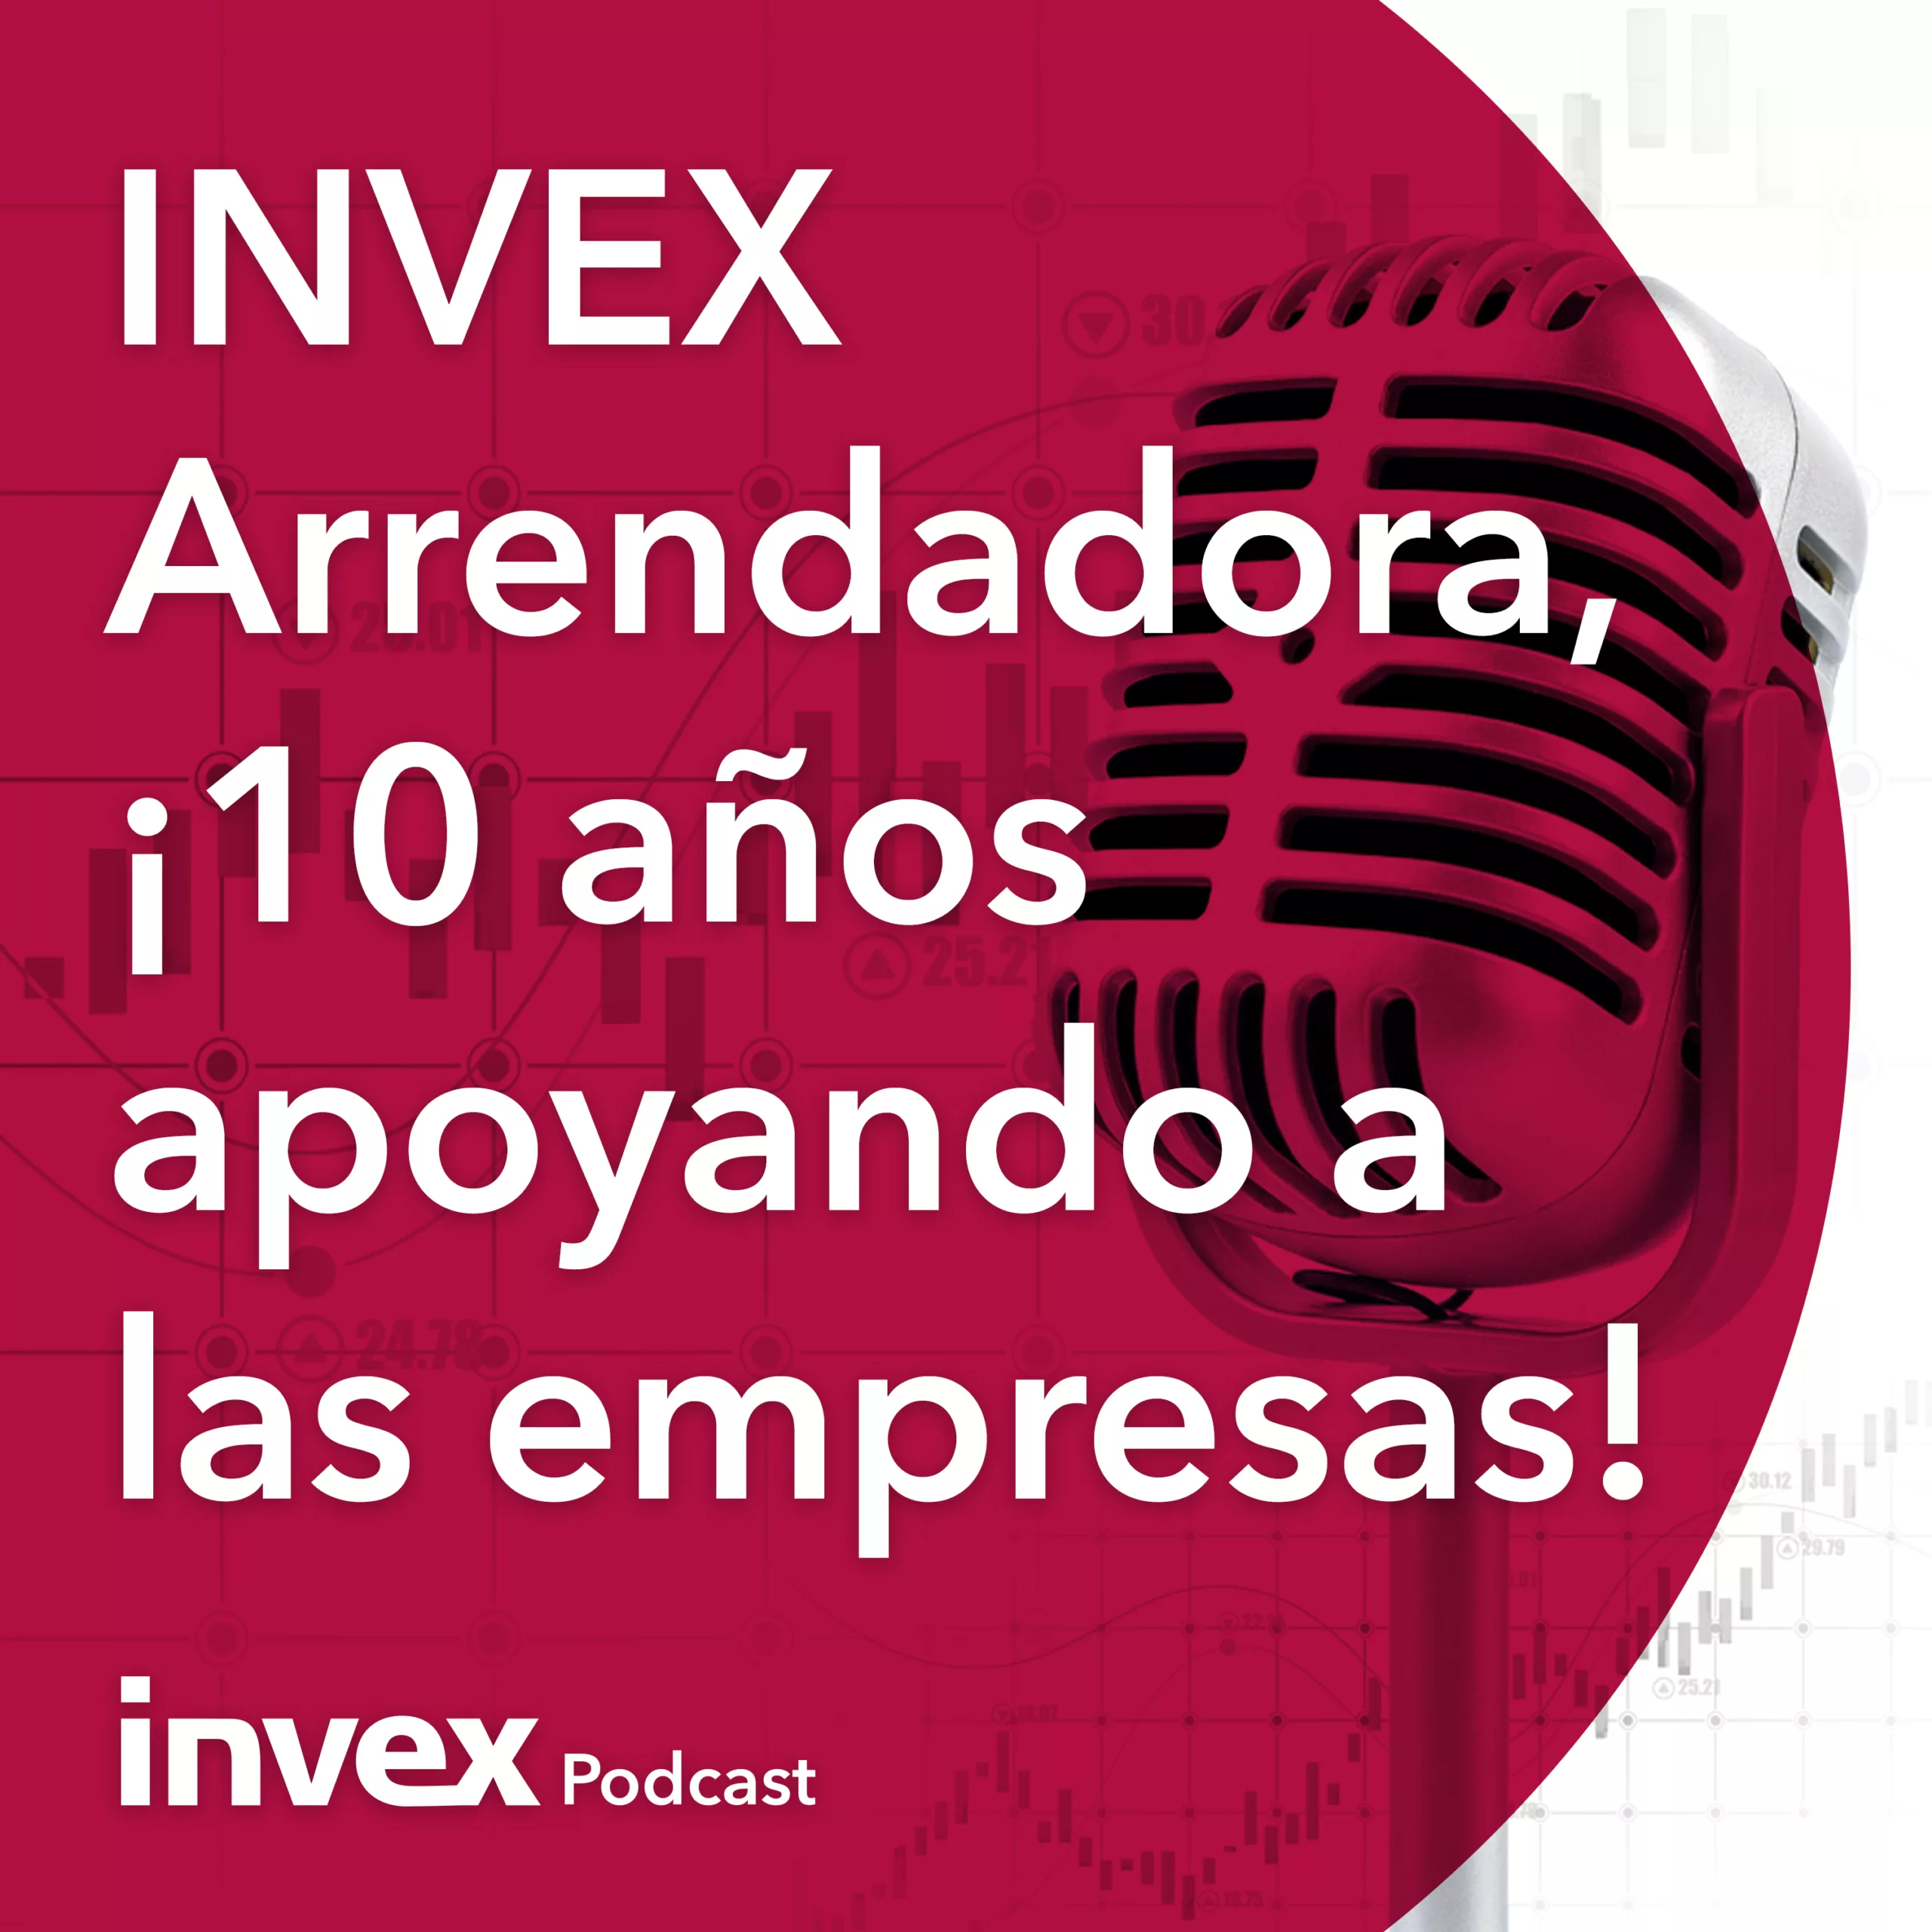 INVEX Arrendadora, ¡10 años apoyando a las empresas! .